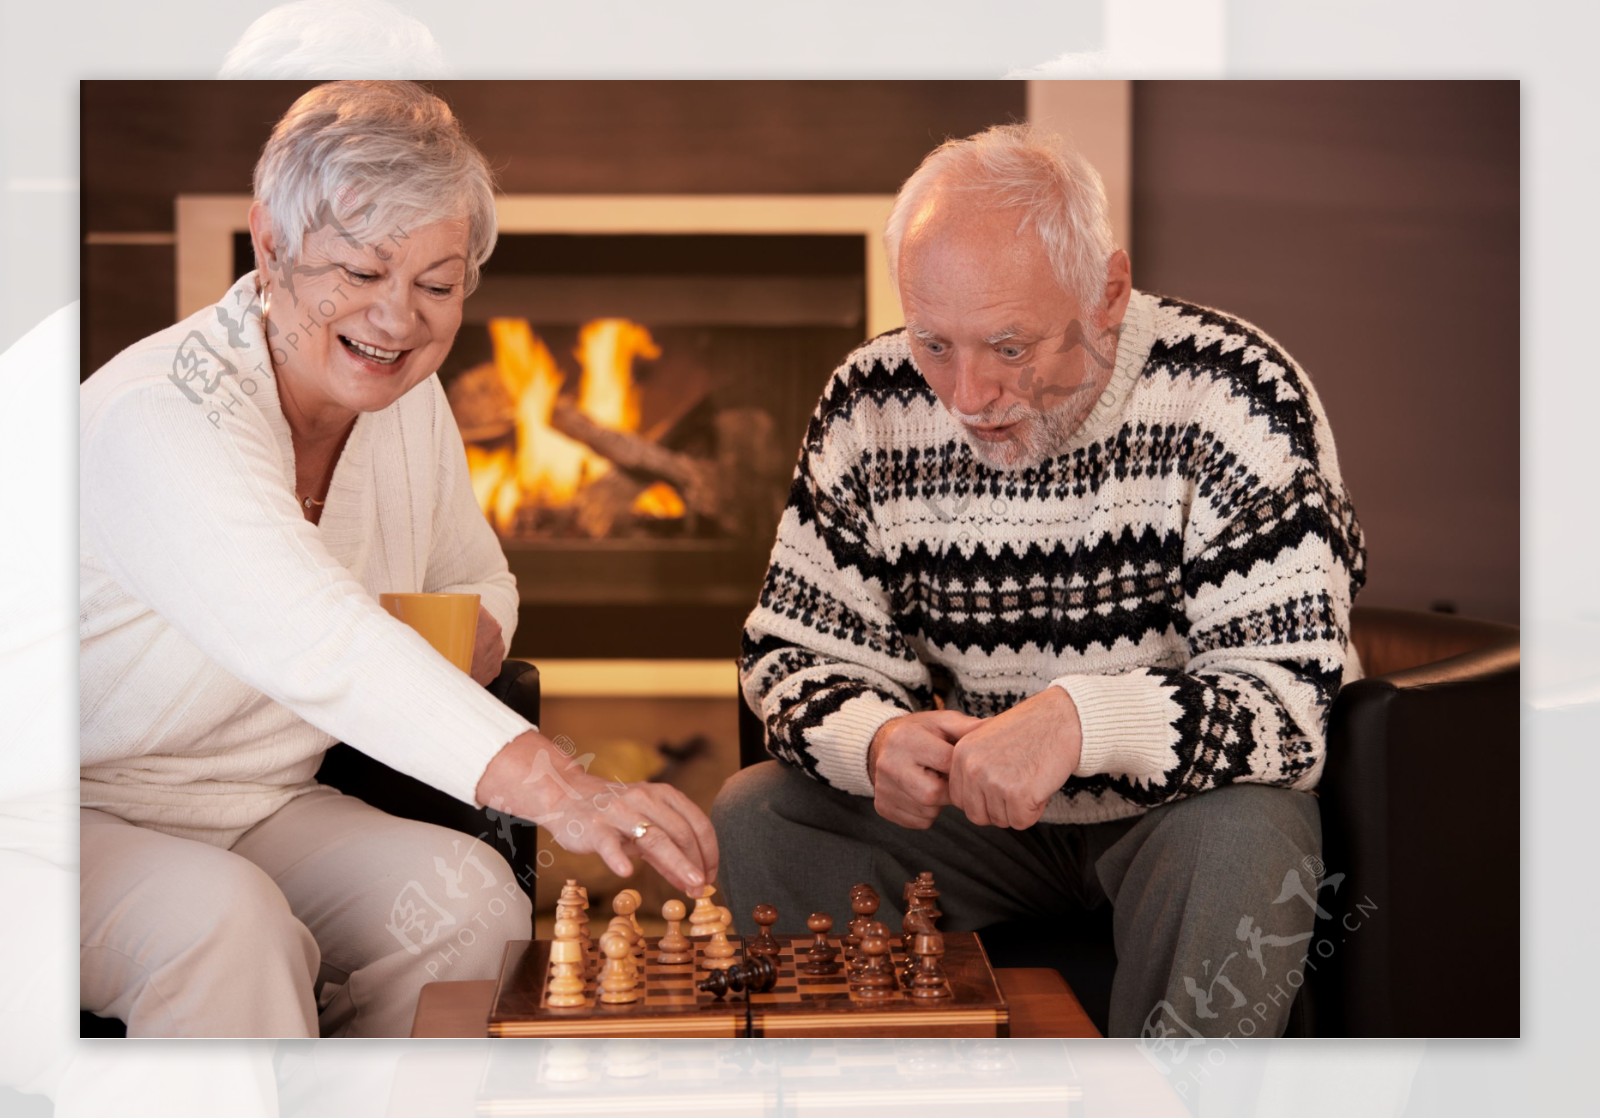 下象棋的老年夫妇图片